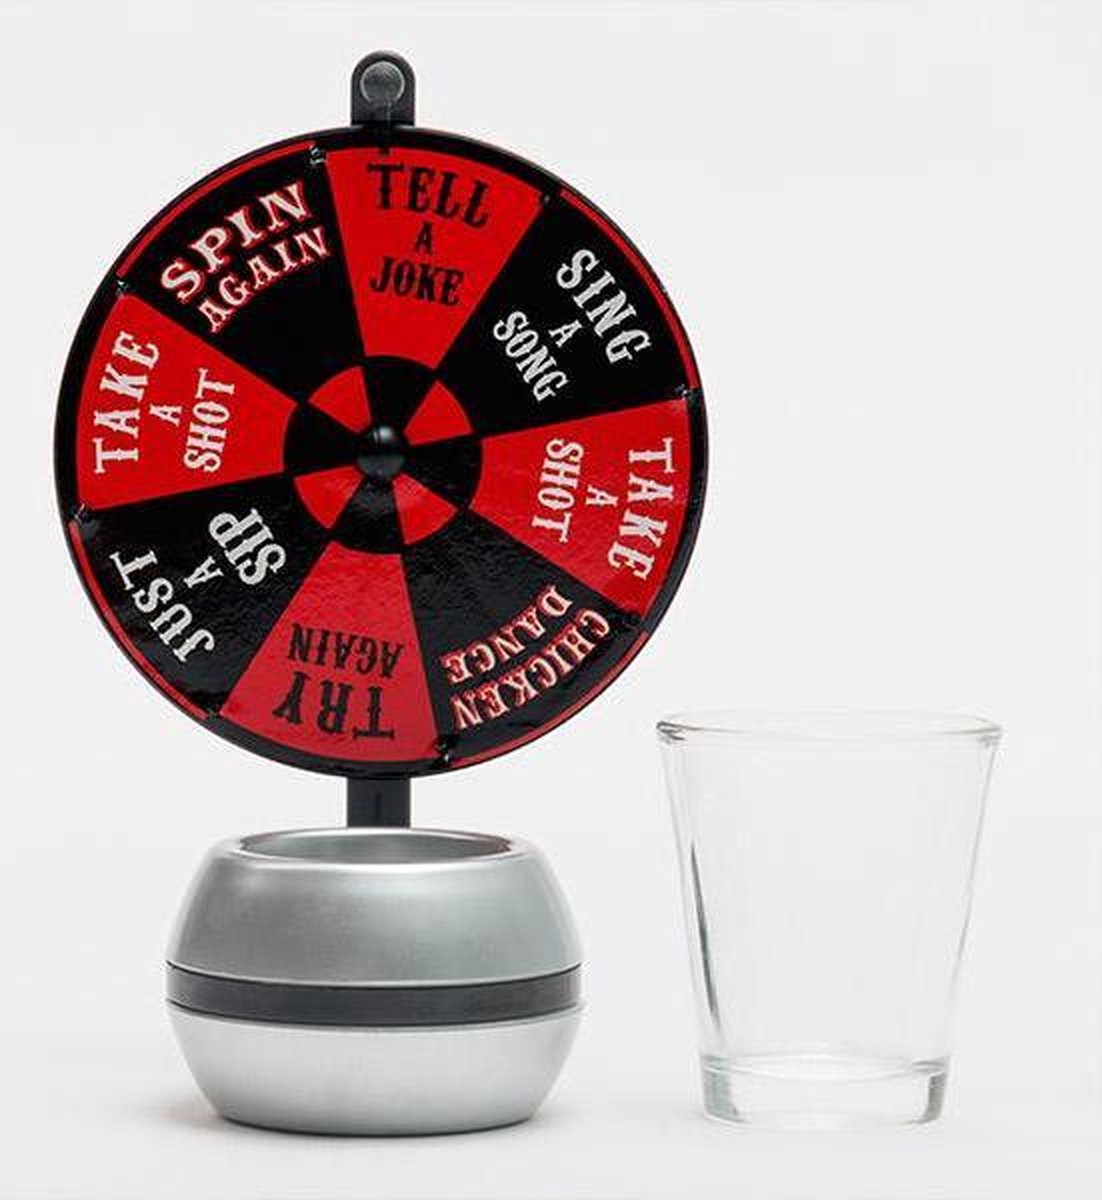 Wheel of Shots - Jeu à boire, Jeux